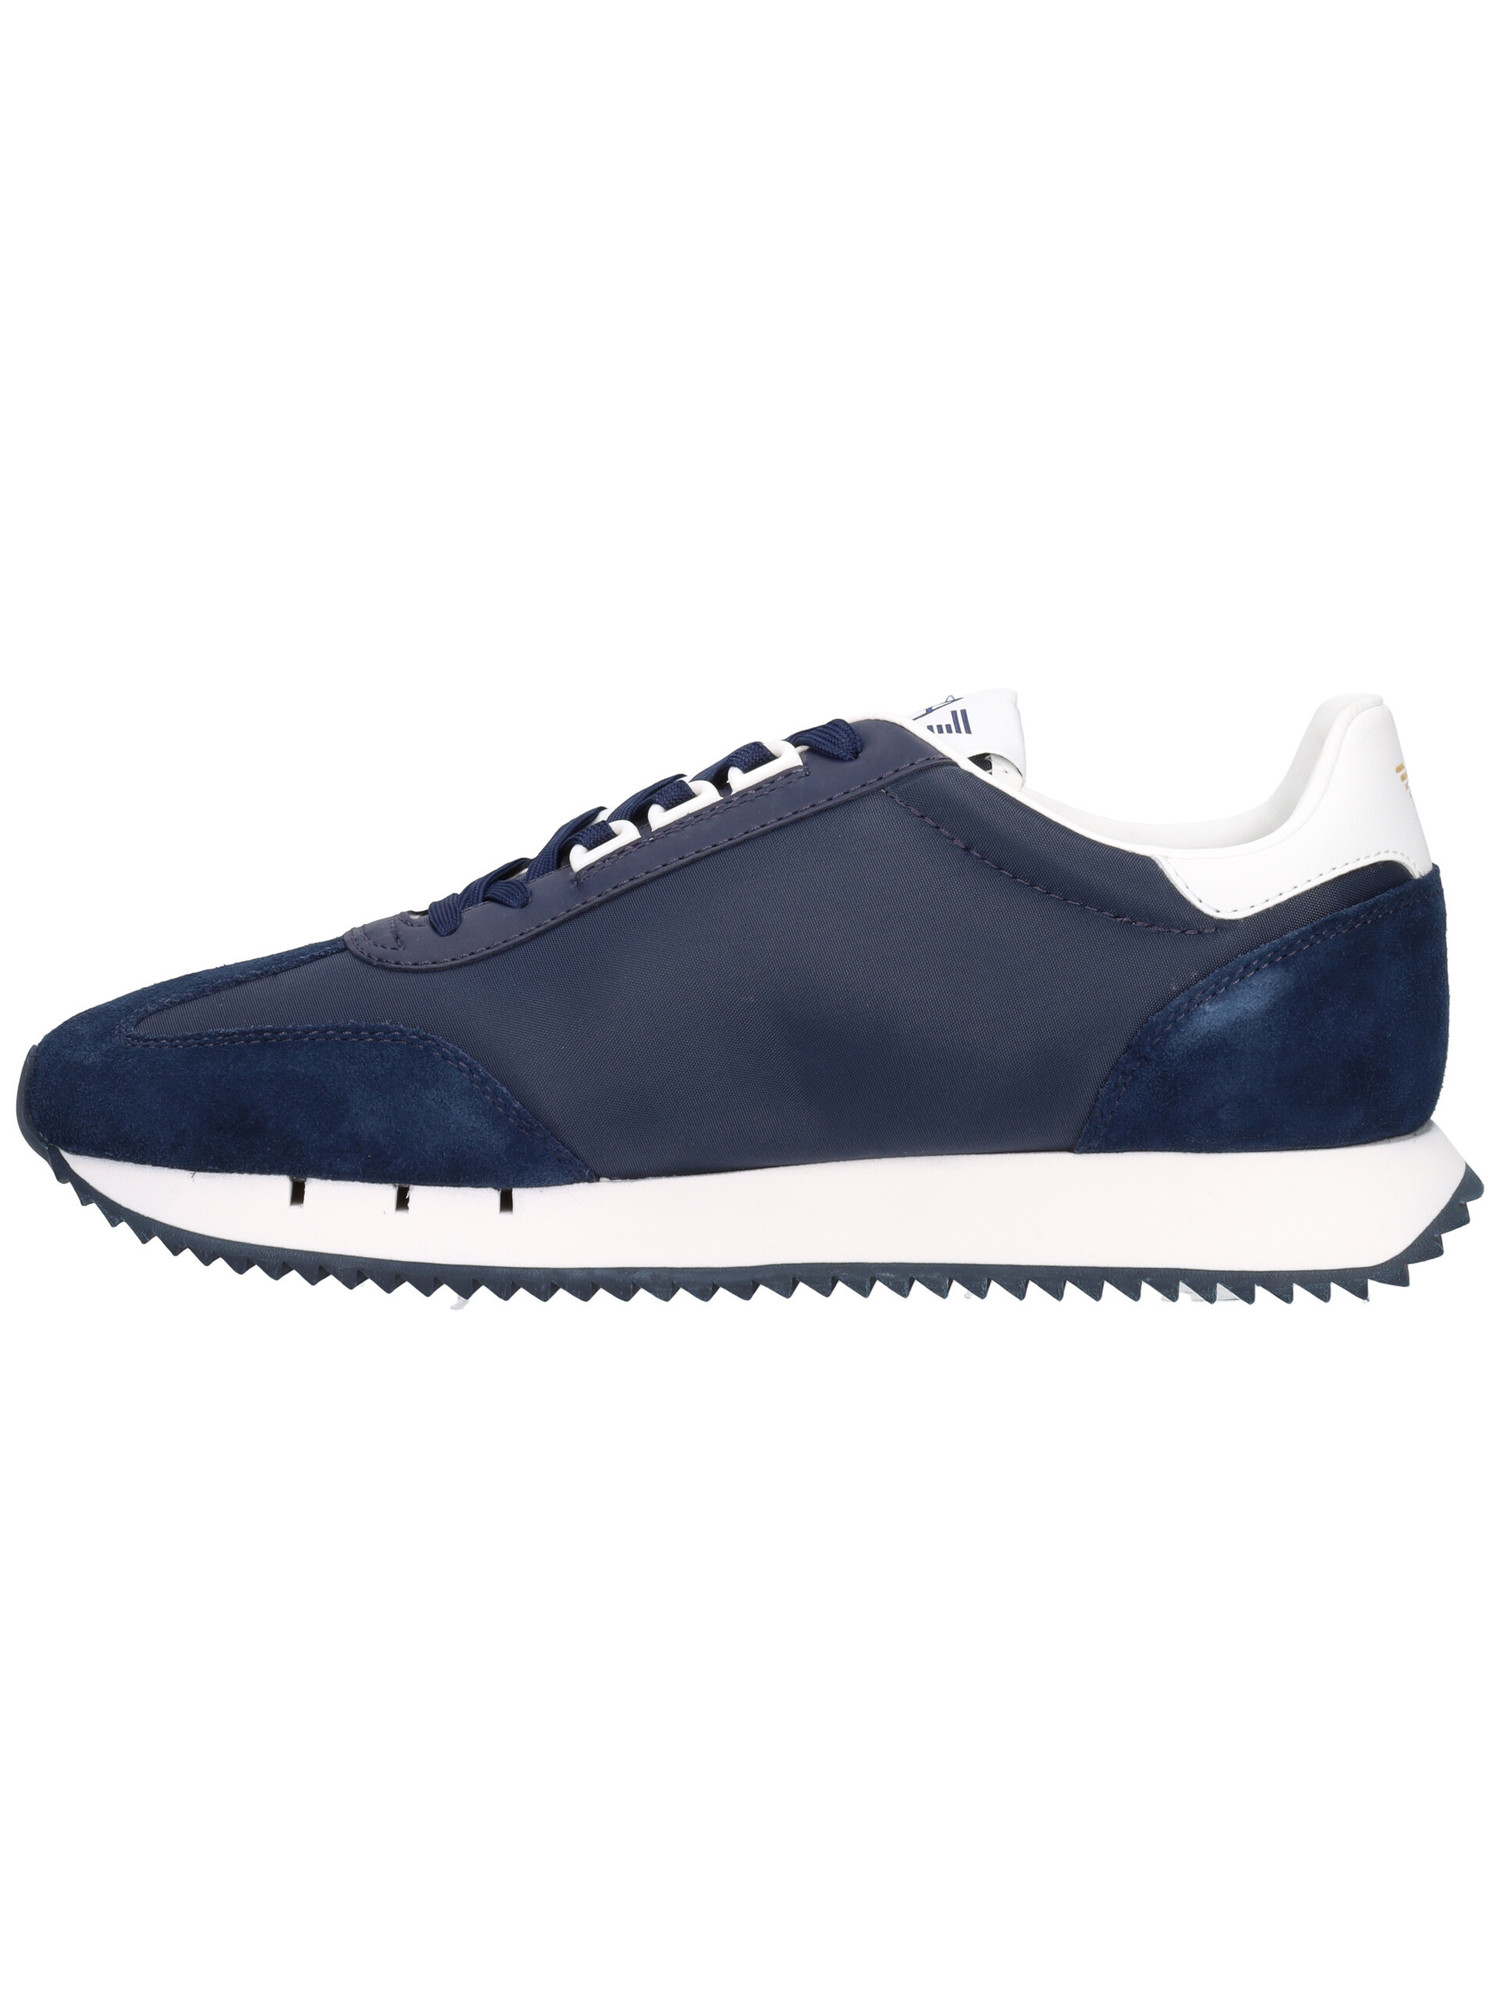 sneaker-emporio-armani-da-uomo-blu-cbb099